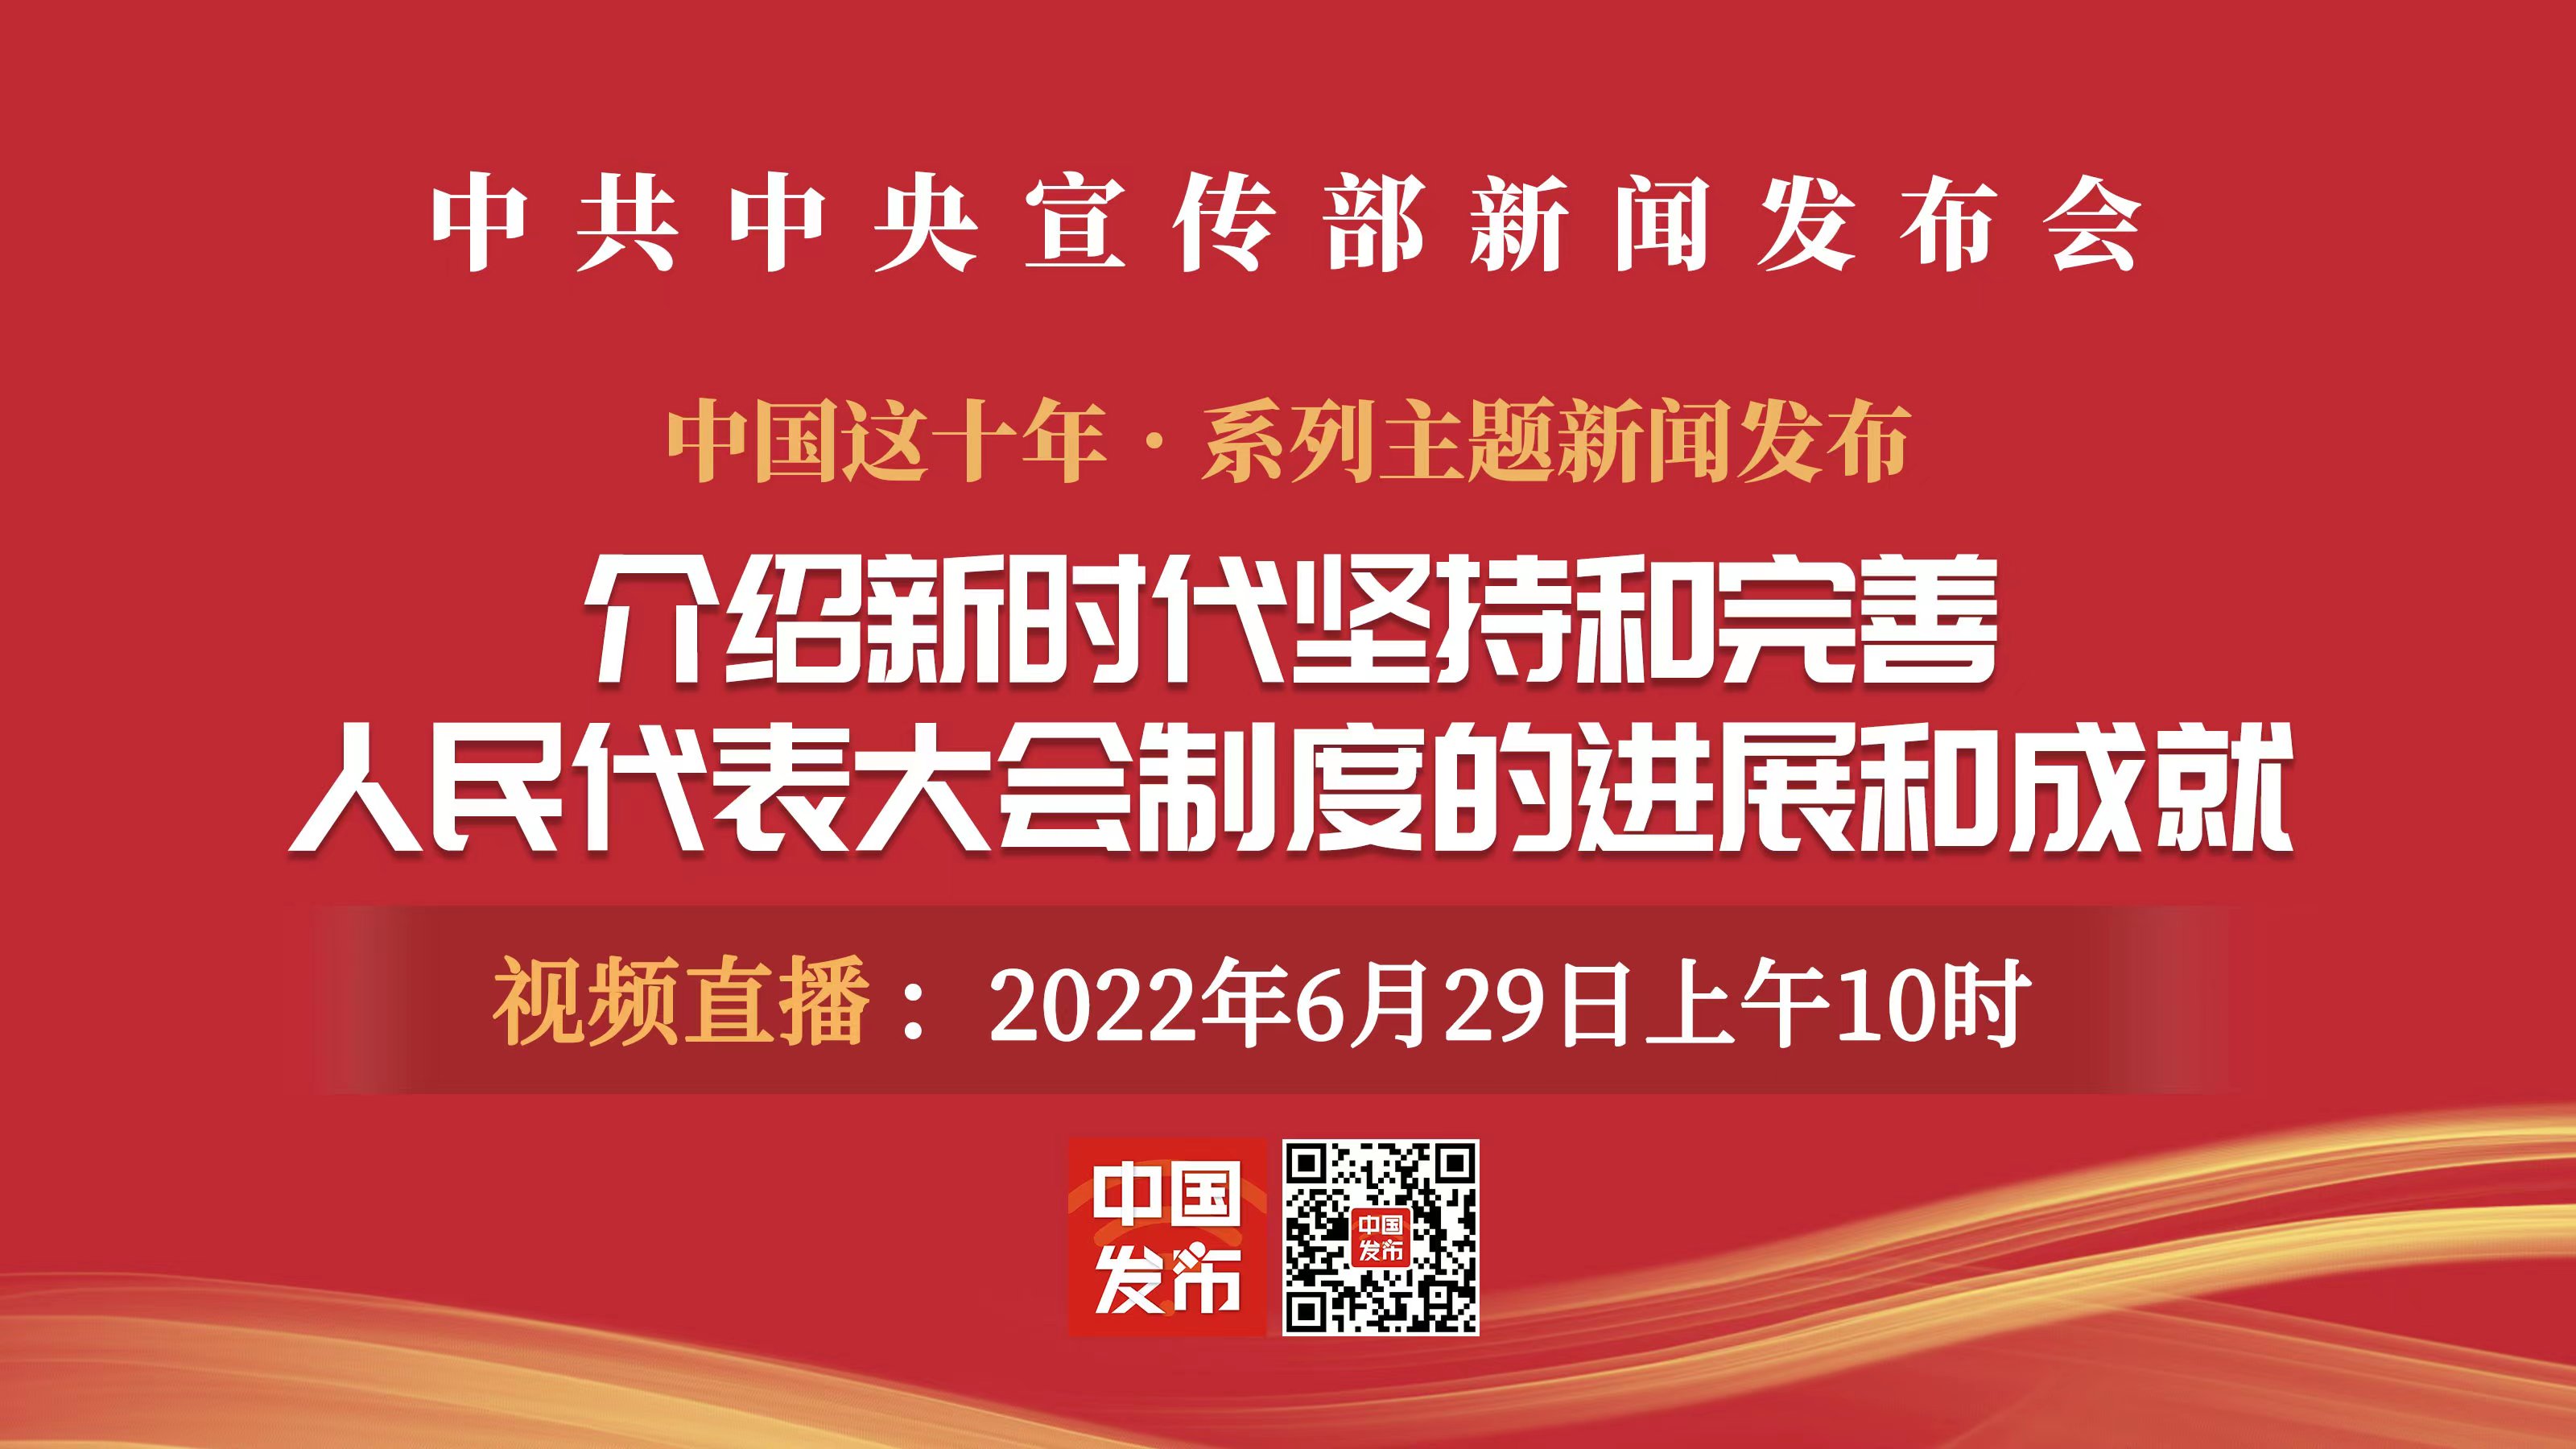 中共中央宣传部举行介绍新时代坚持和完善人民代表大会制度的进展和成就发布会